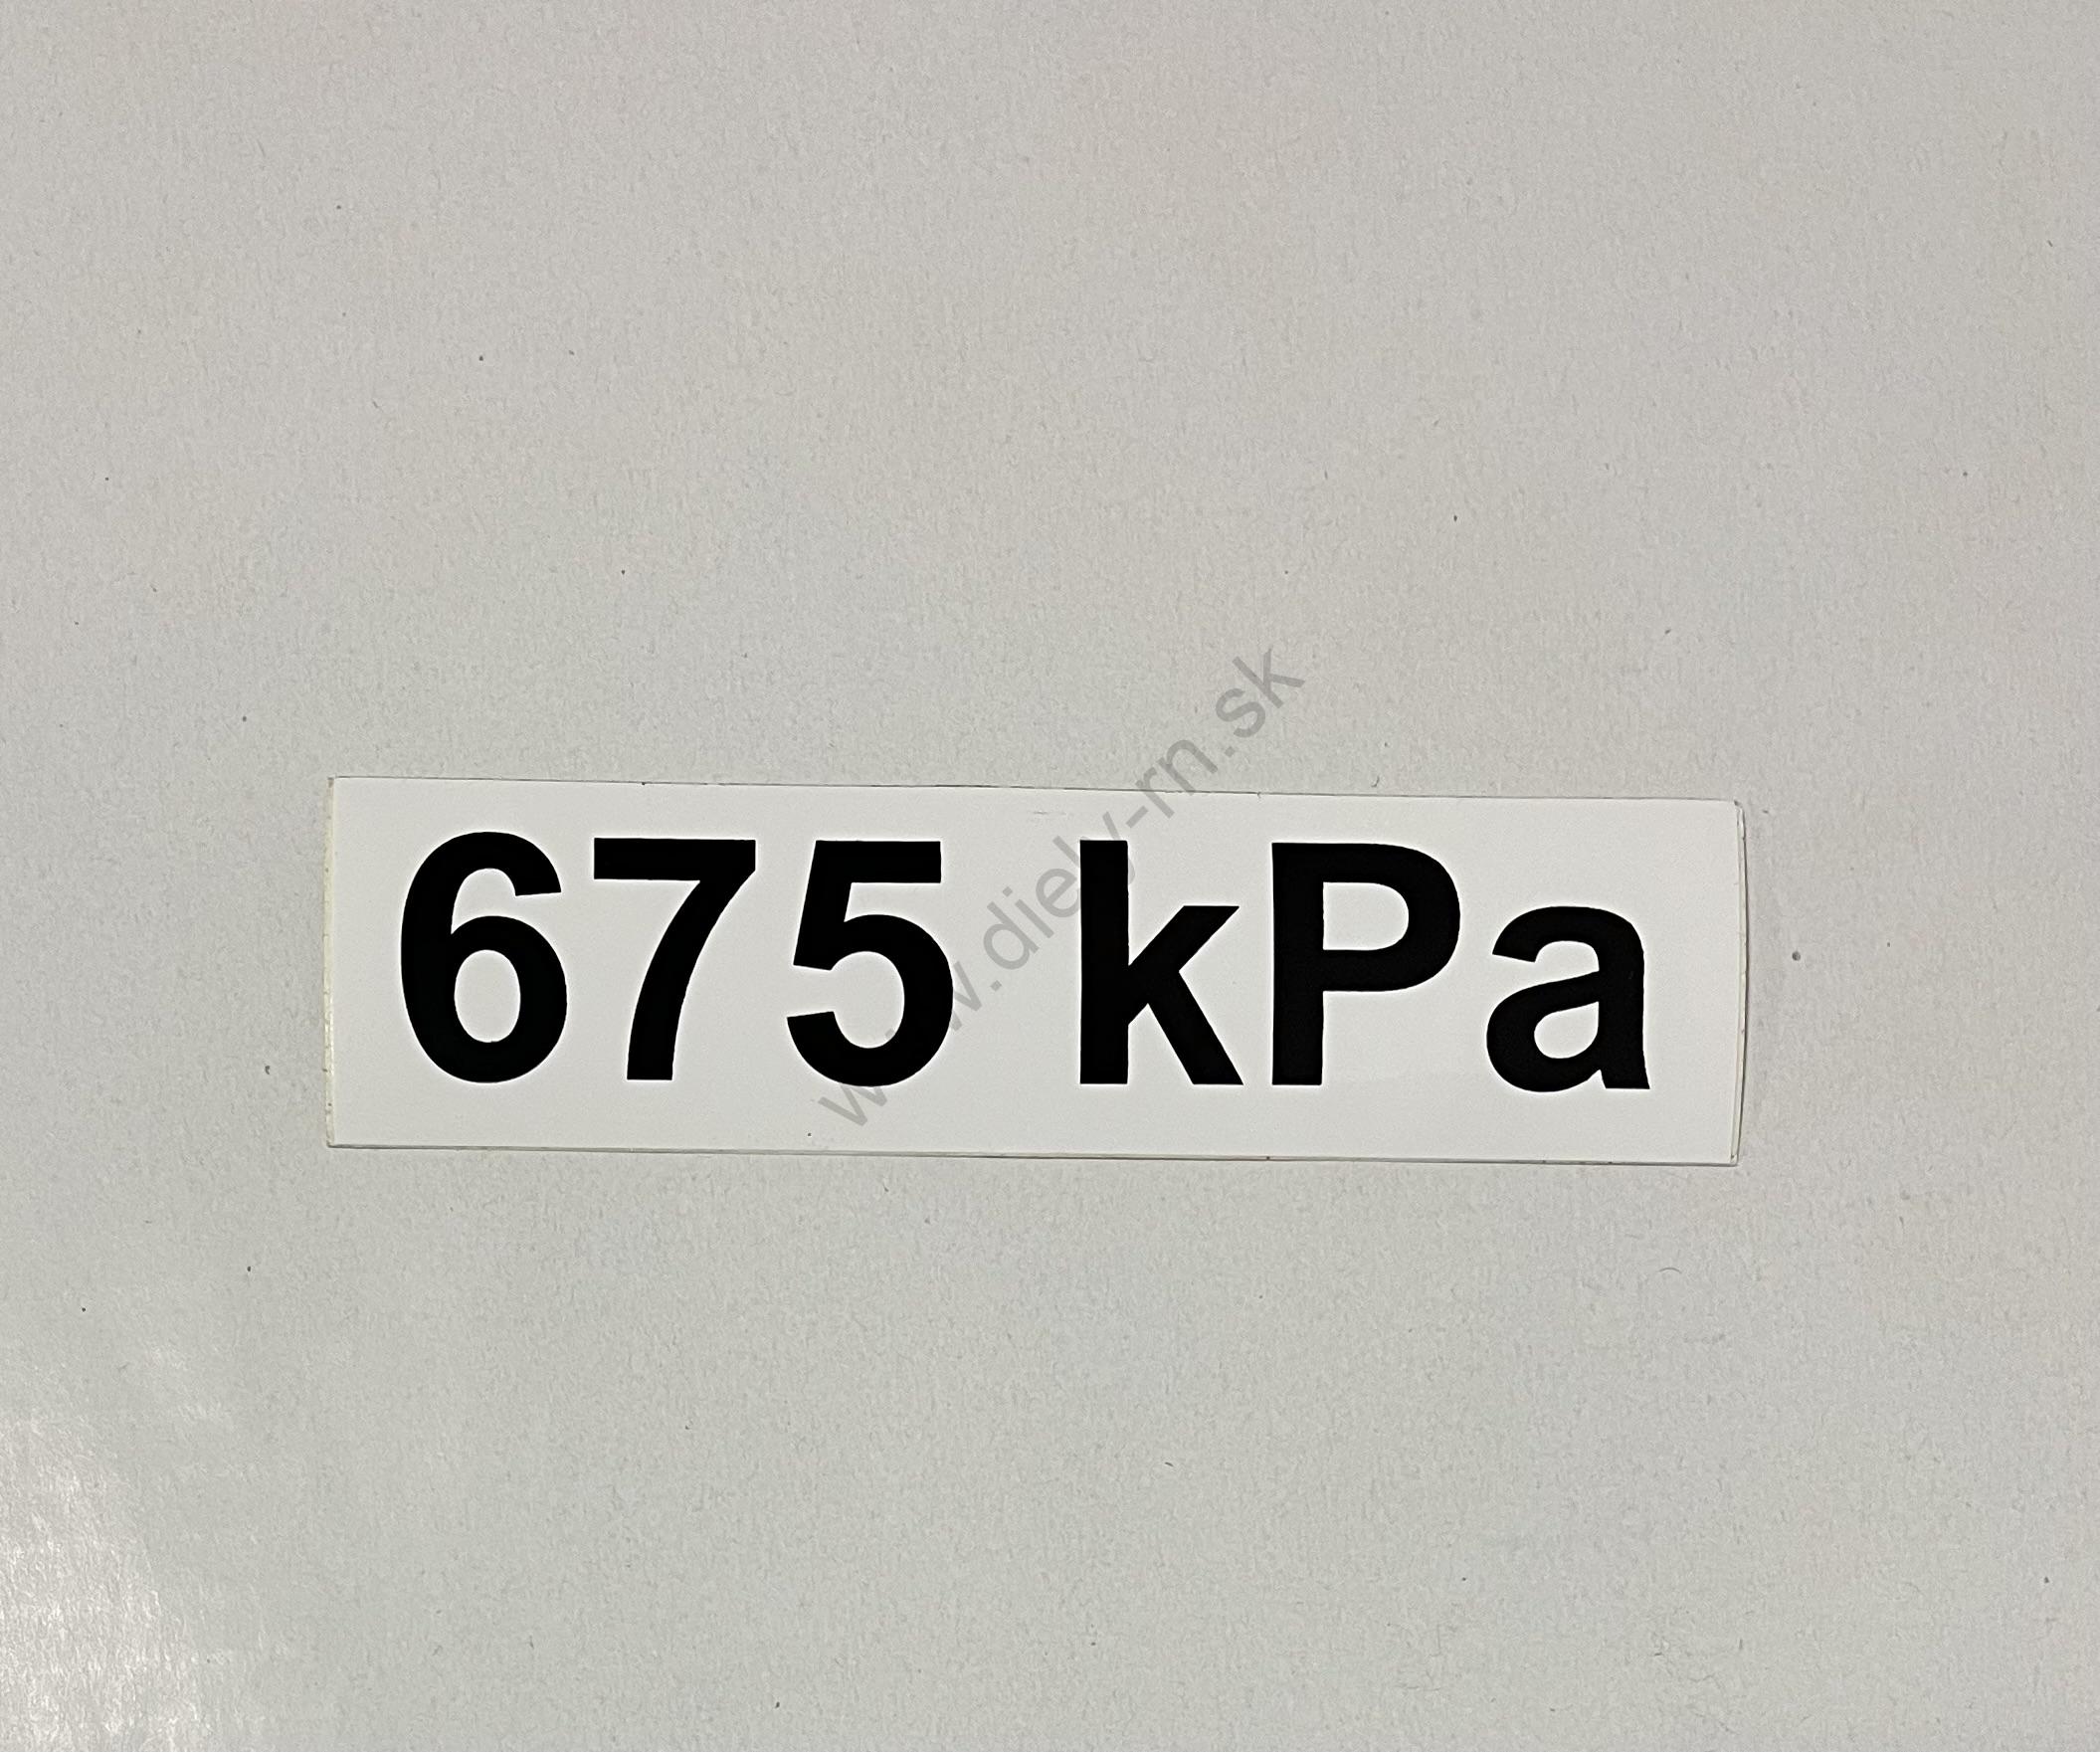 Označenie kPa 675